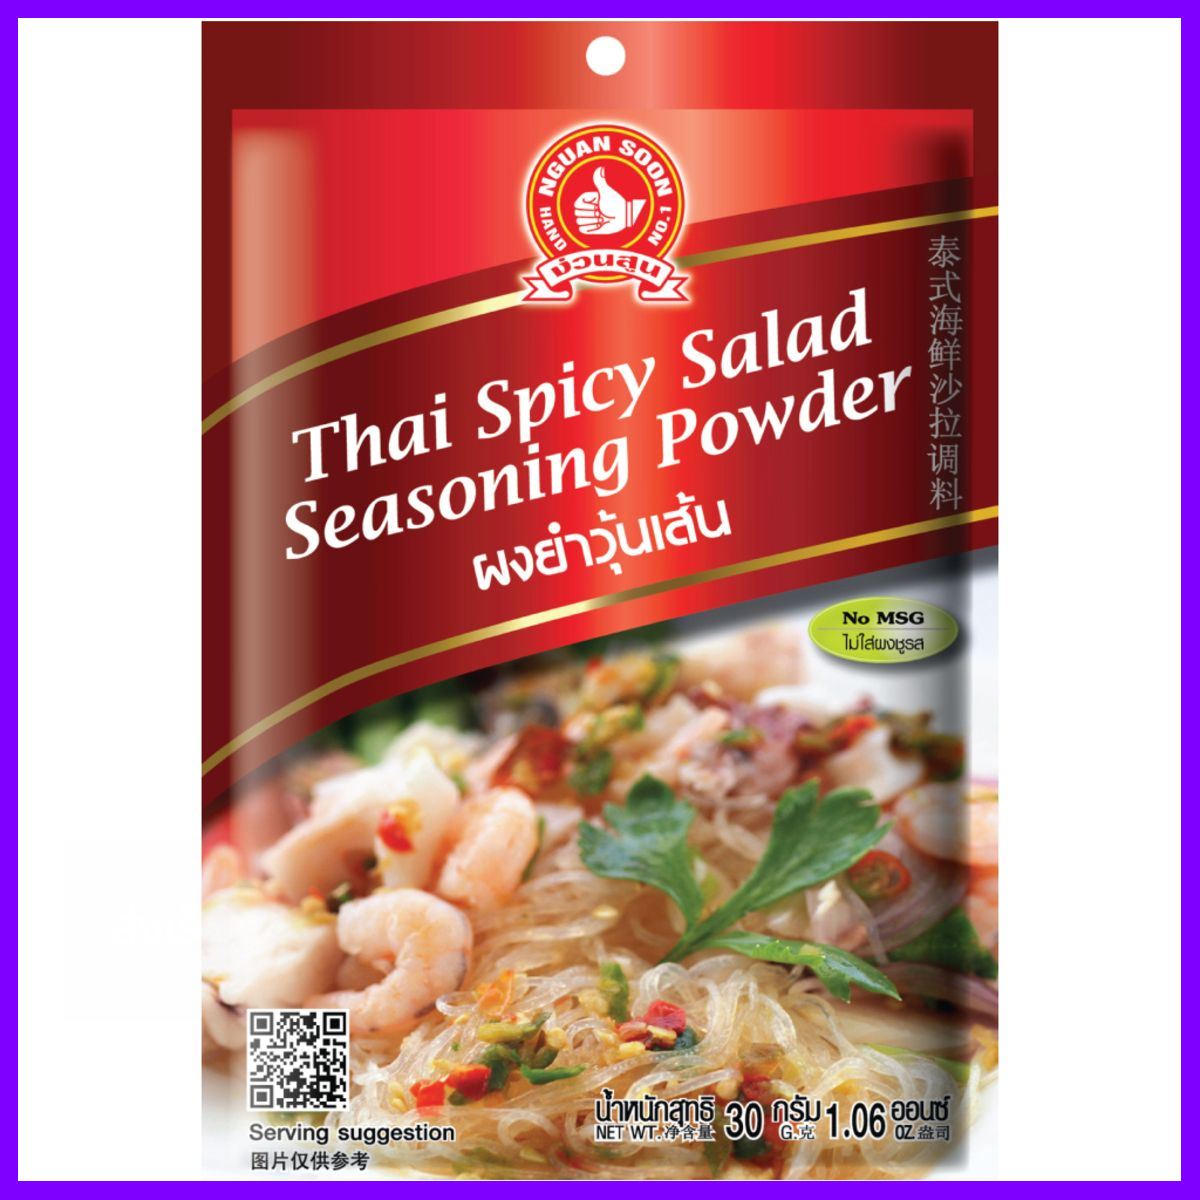 ด่วน ของมีจำนวนจำกัด Hand Brand No.1-thai Spicy Salad Seasoning Powder โปรโมชั่นสุดคุ้ม โค้งสุดท้าย